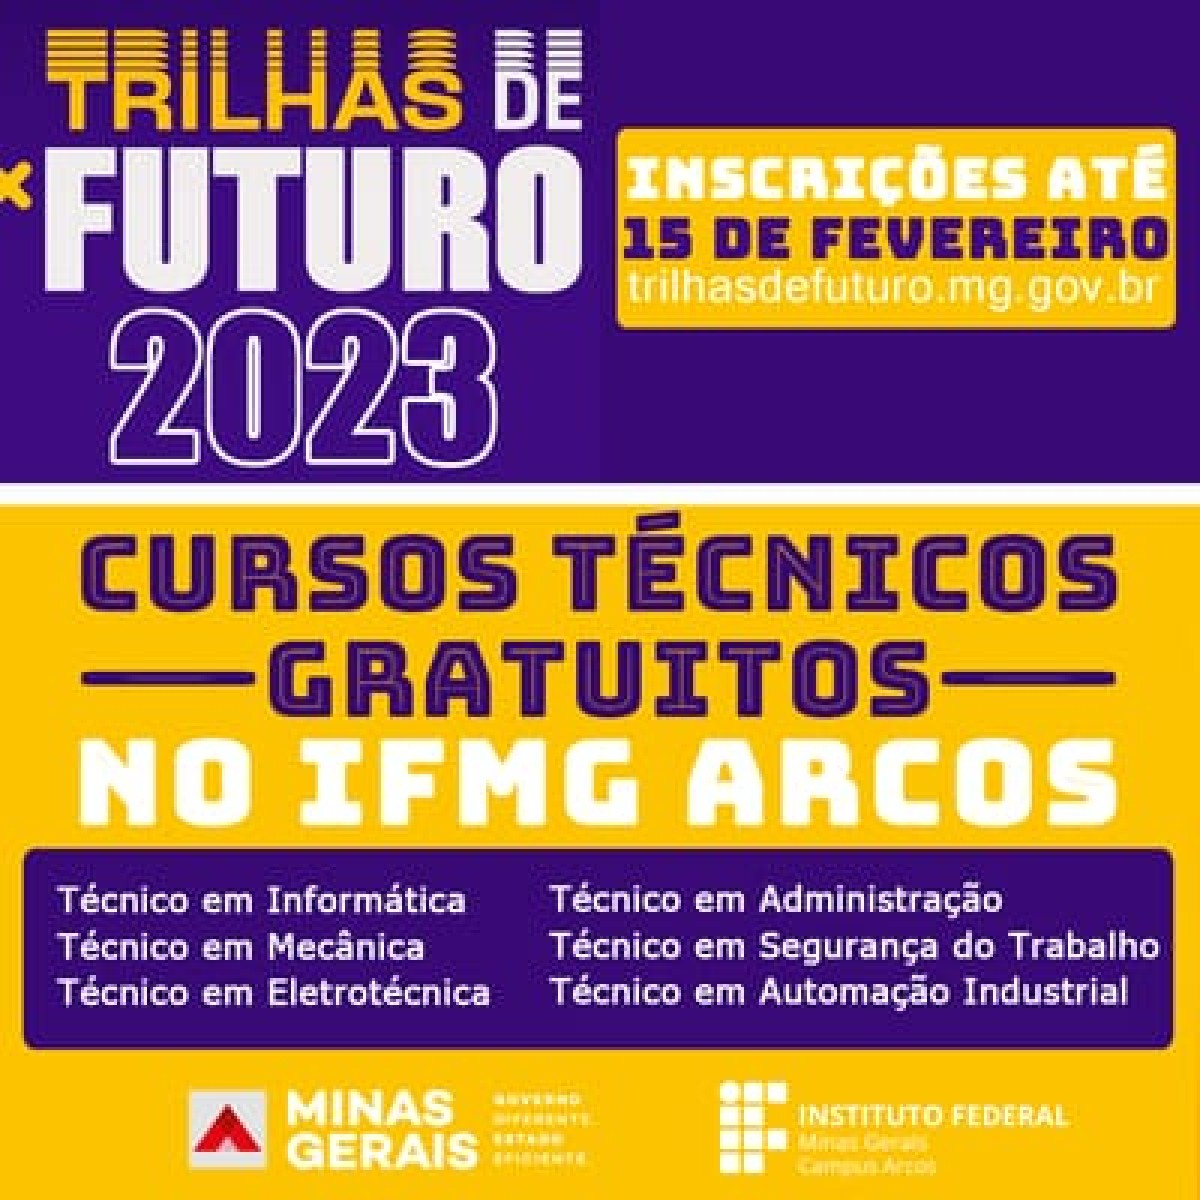 Agência Minas Gerais  Trilhas de Futuro: instituições de ensino  interessadas em oferecer os cursos técnicos já podem se inscrever